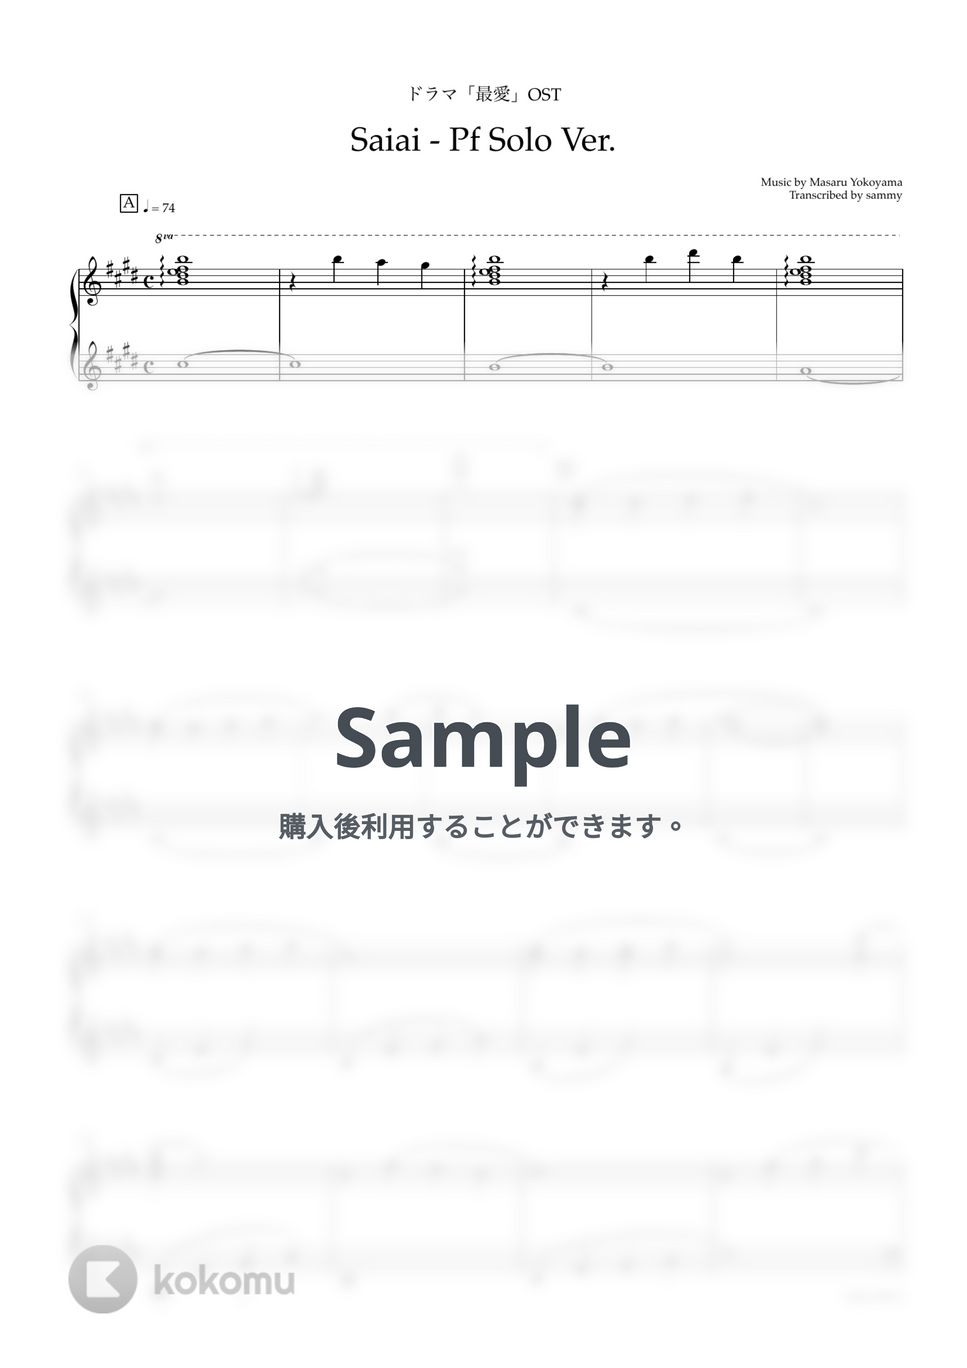 ドラマ『最愛』OST - Saiai - Pf Solo Ver. by sammy